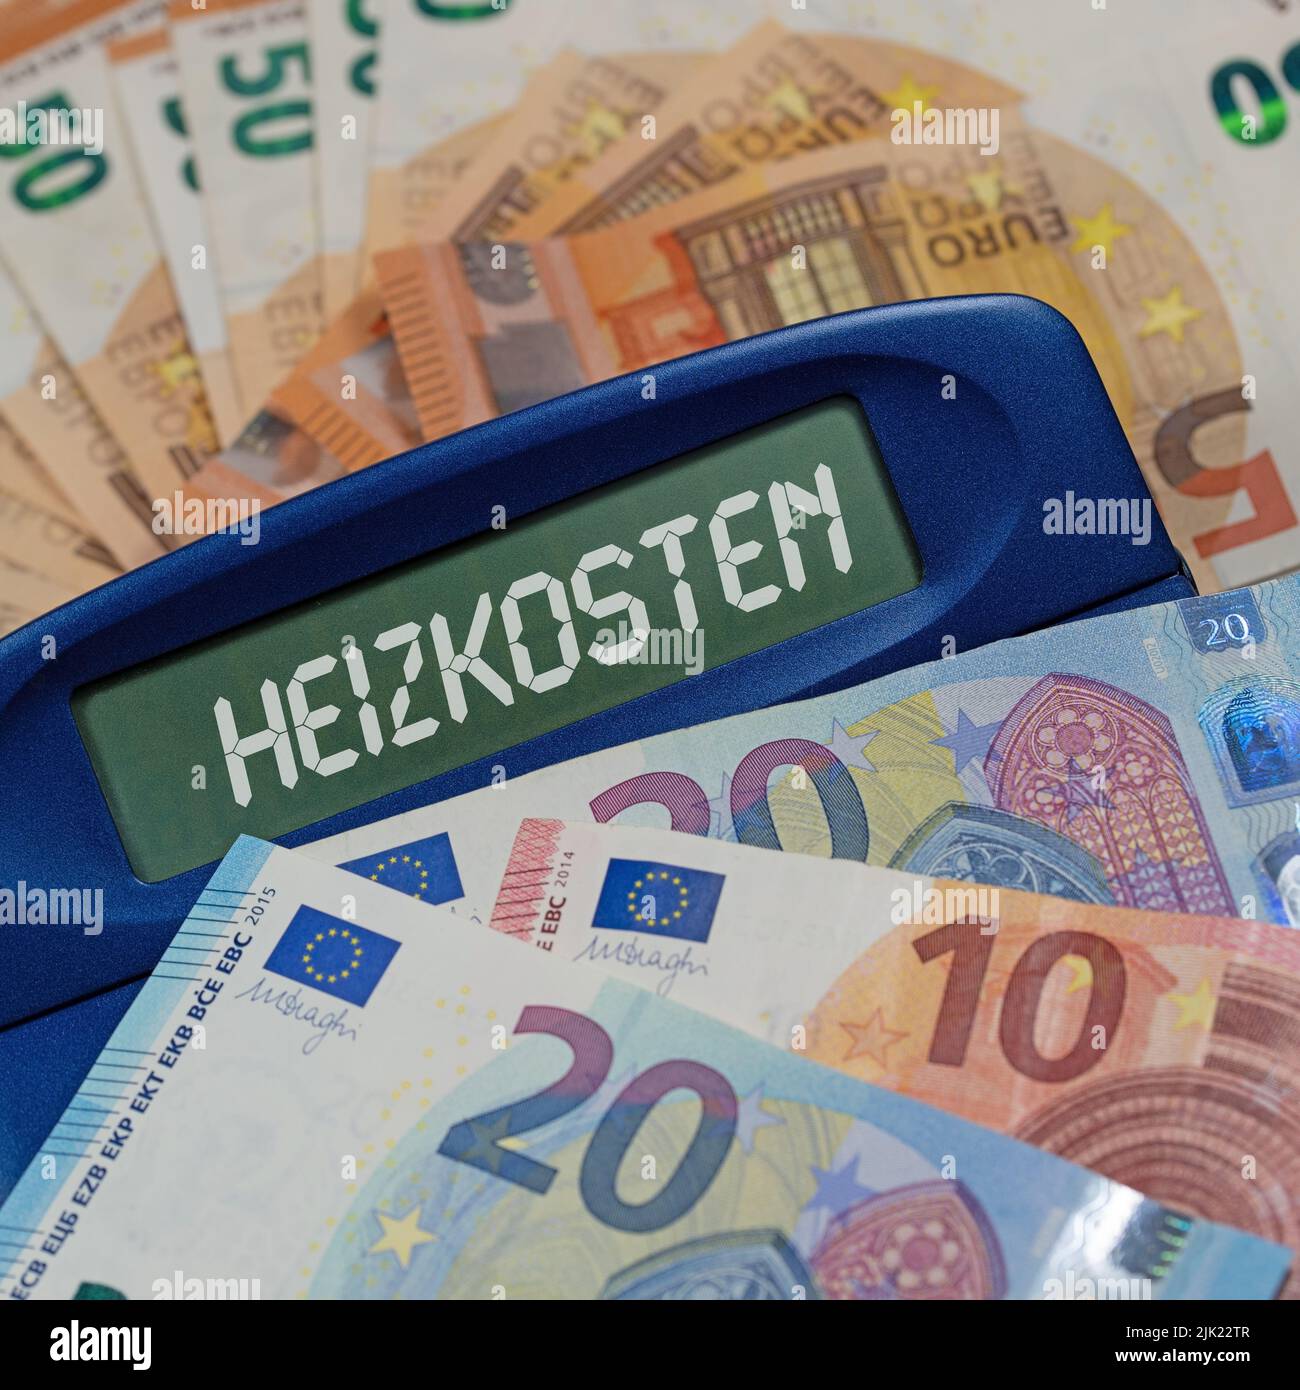 Calcolatrice con la parola 'Heizkosten', traduzione 'costi di riscaldamento' sul display di fronte alle banconote Foto Stock